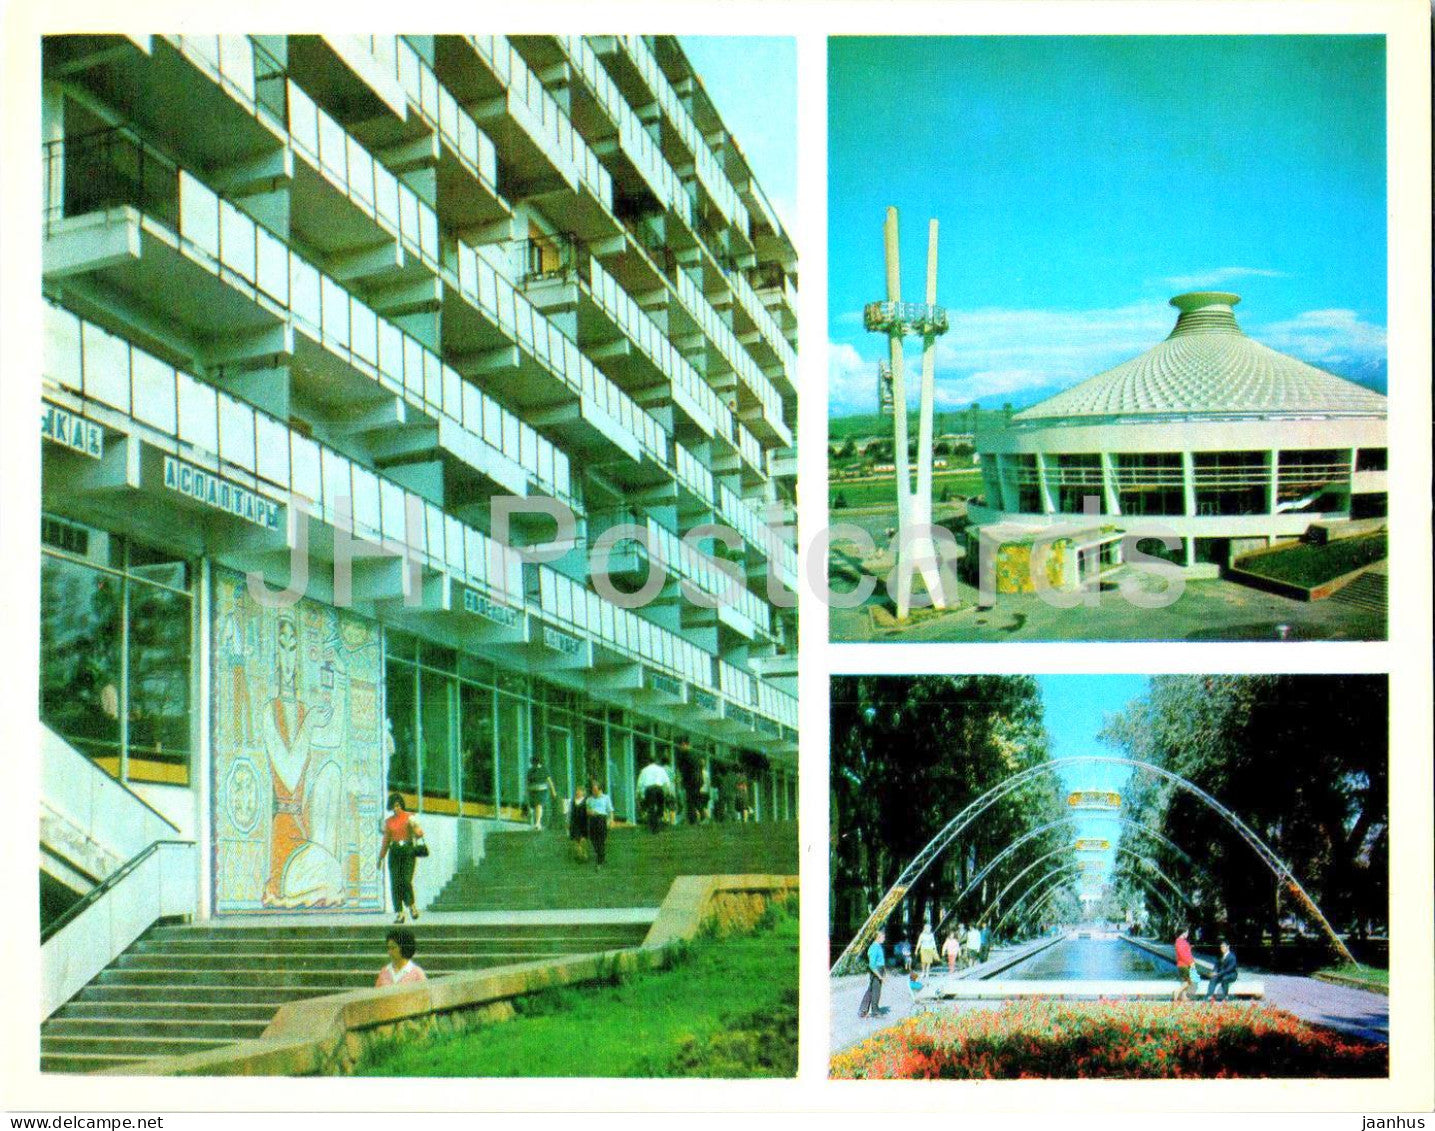 Almaty - Alma-Ata - department store in Lenin avenue - circus - 1974 - Kazakhstan USSR - unused - JH Postcards